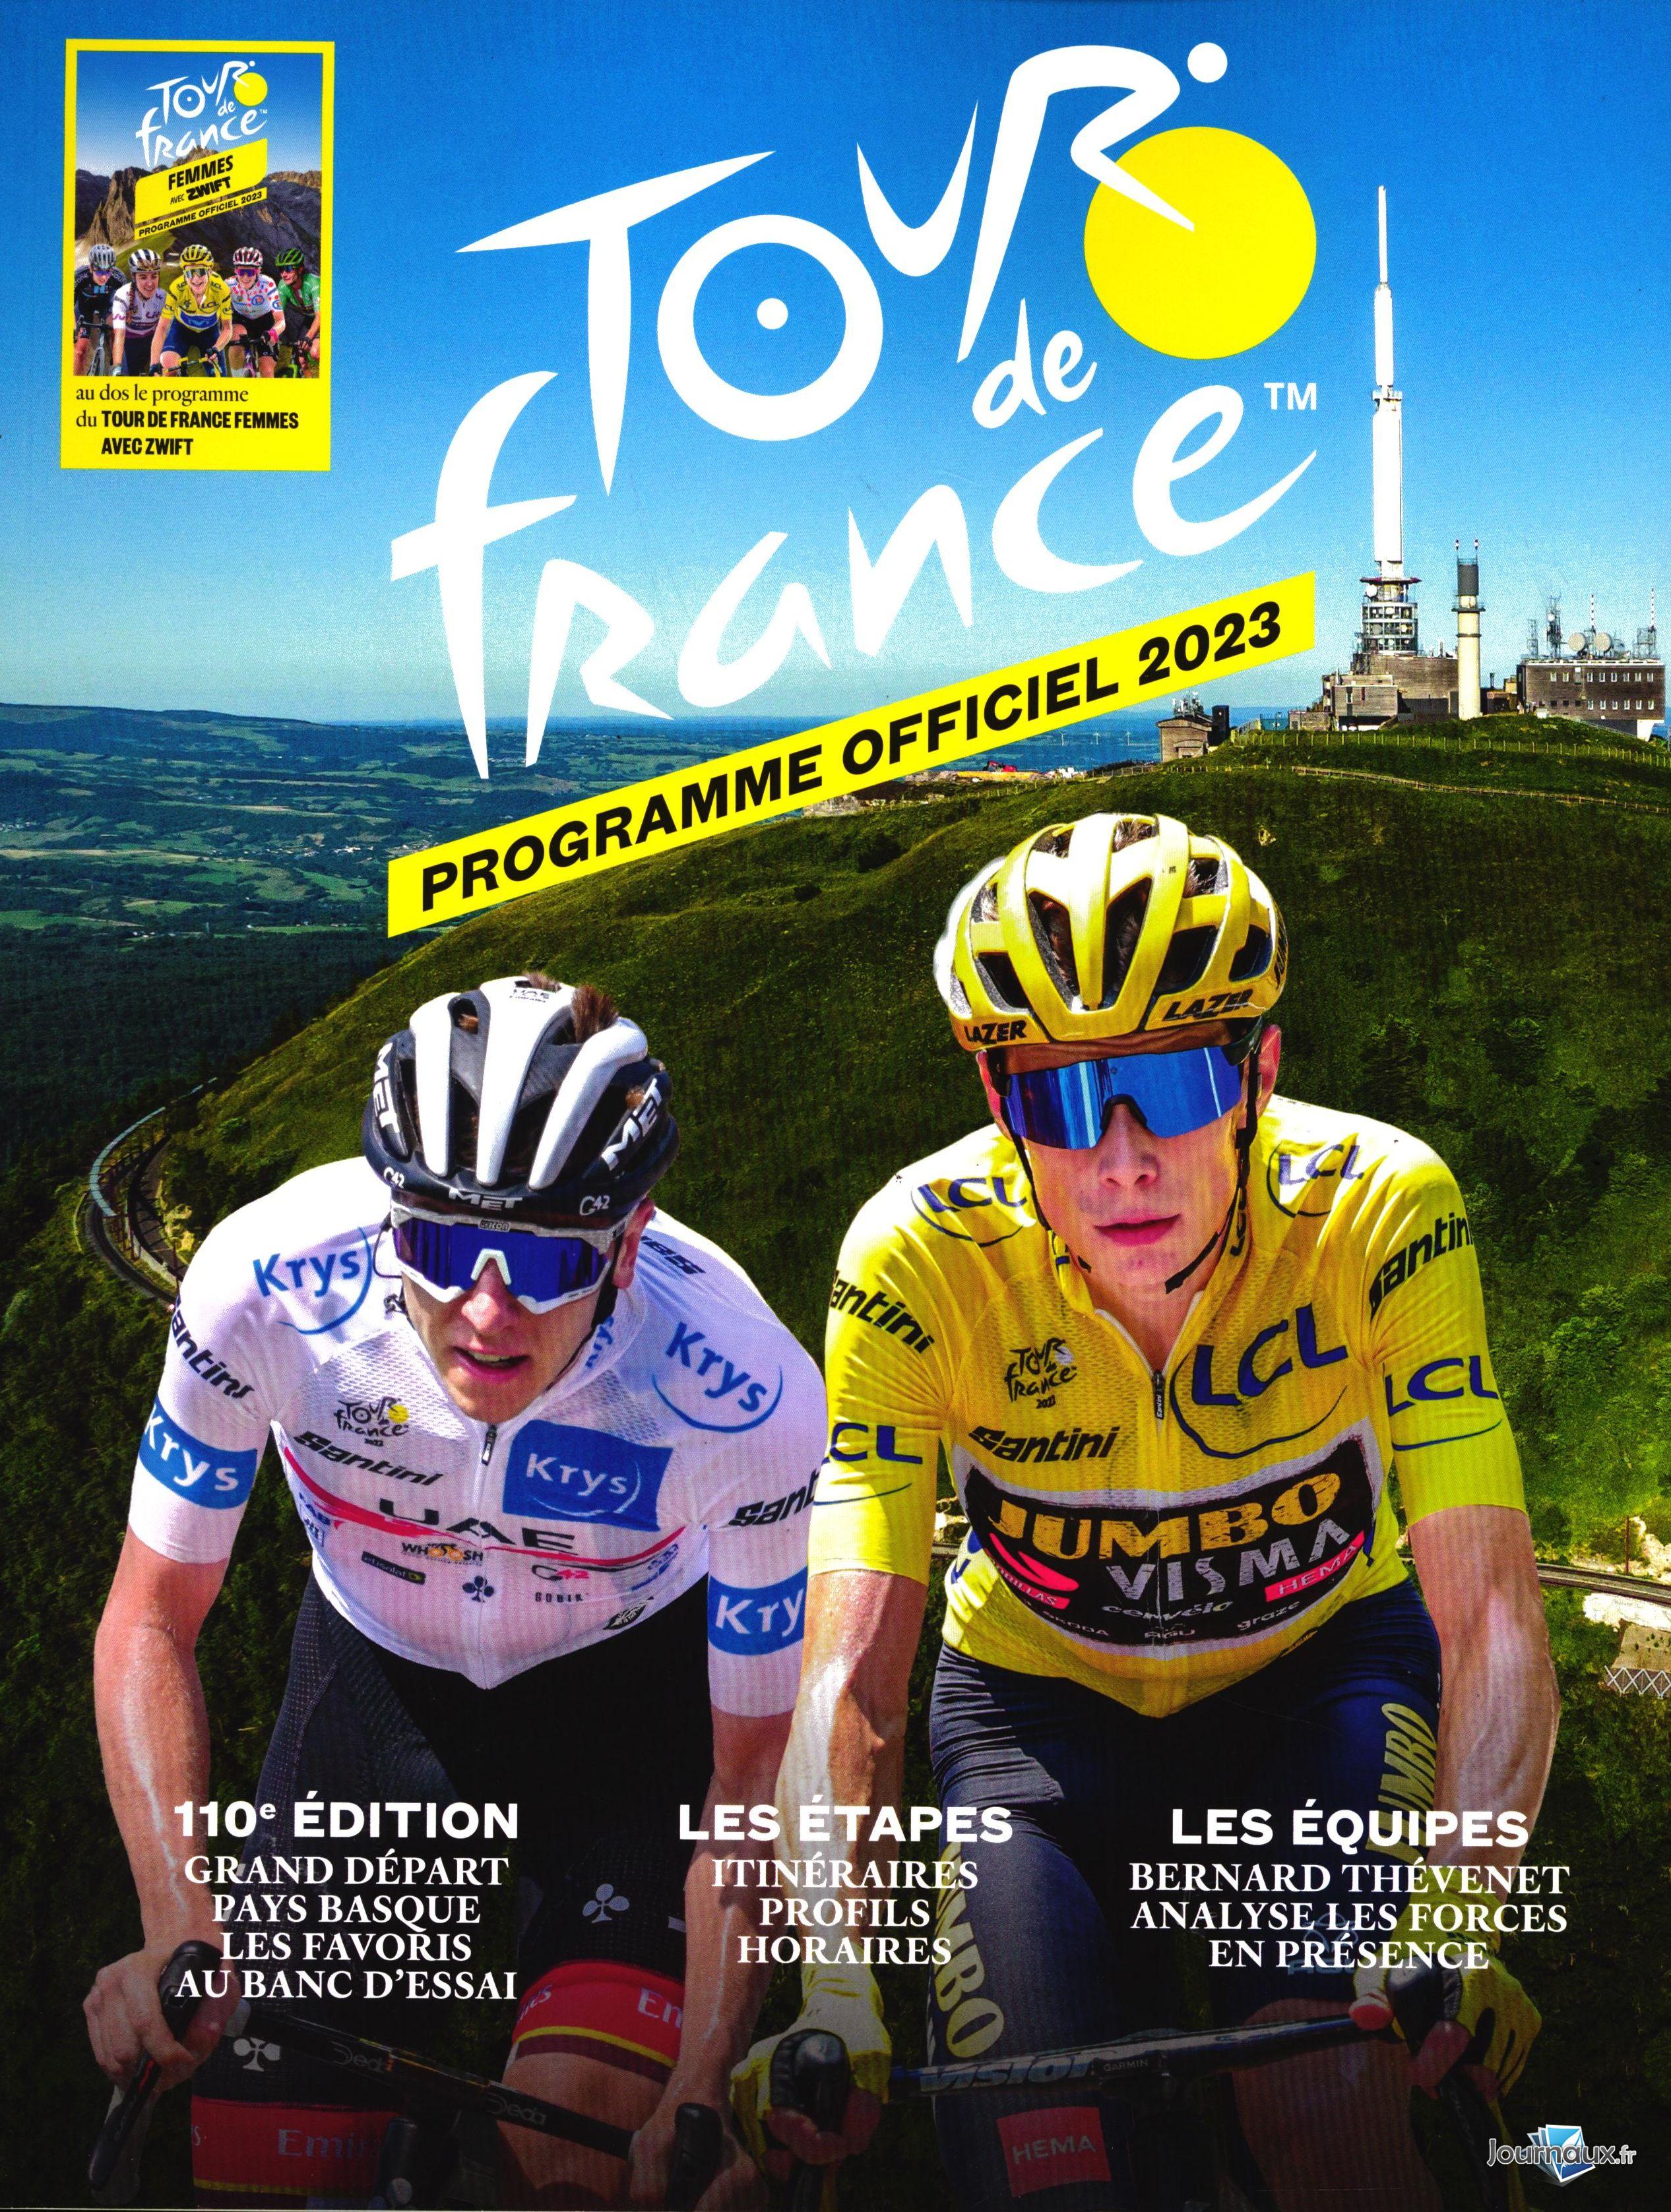 www.journaux.fr - Programme Officiel Du Tour de France 2021